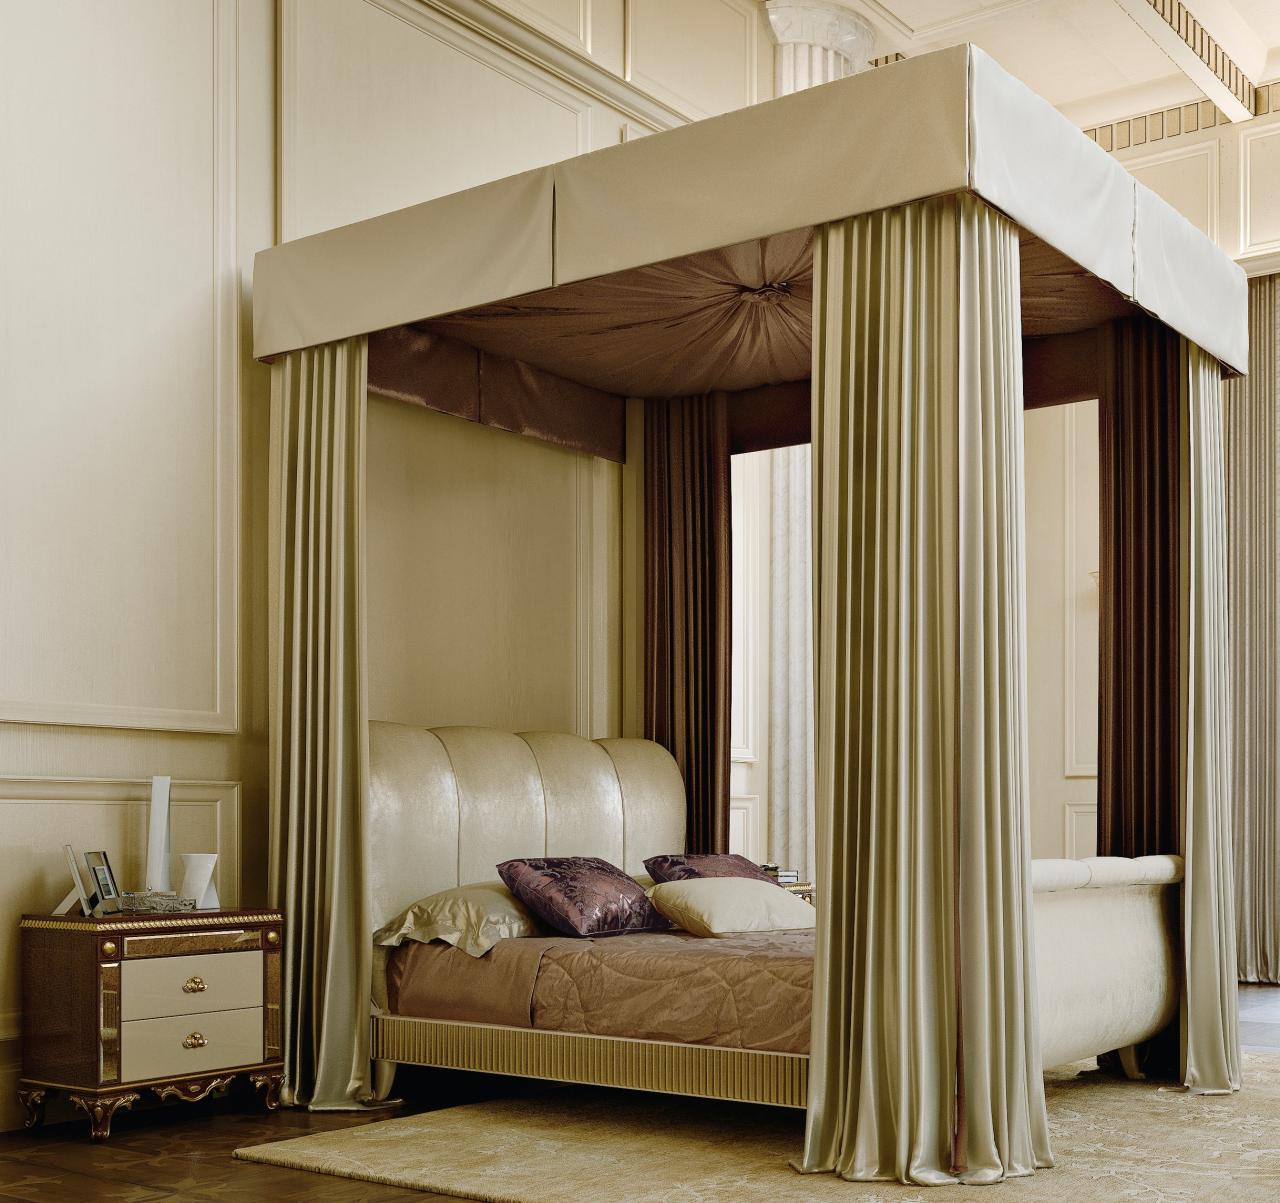 Canopy bedroom beds bed wonderful dreamlike homesfeed vintage